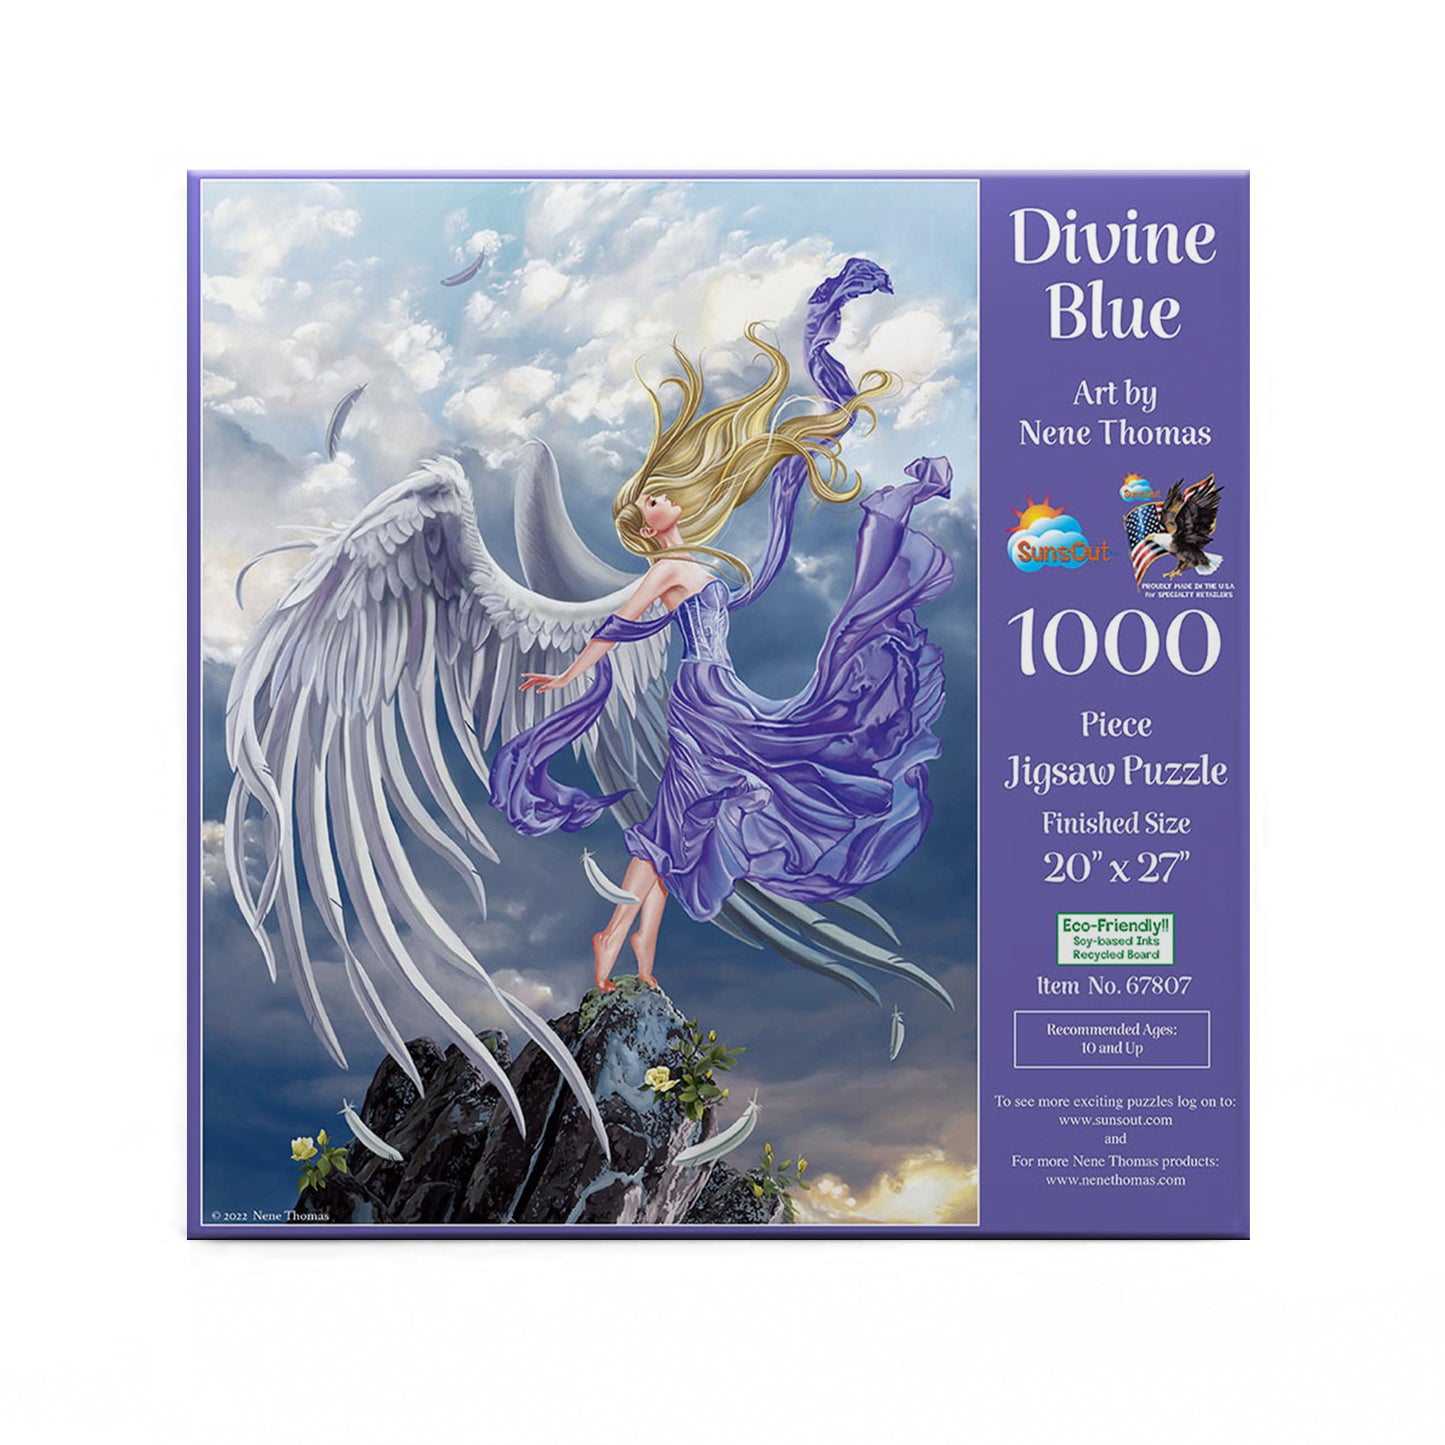 Divine Blue by Nene Thomas, 1000 Piece Puzzle